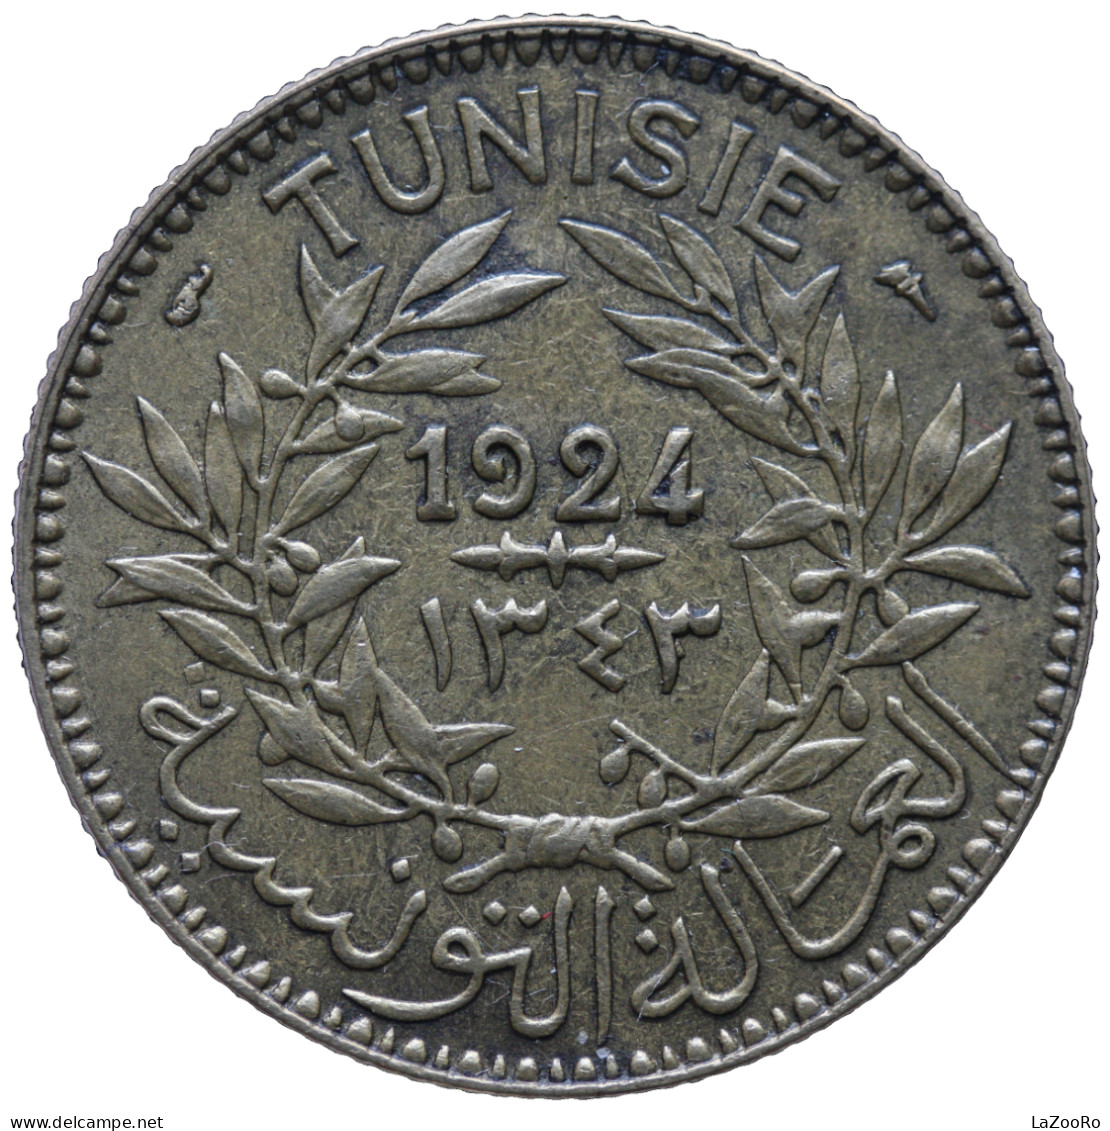 LaZooRo: Tunisia 2 Francs 1924 XF / UNC - Tunisia